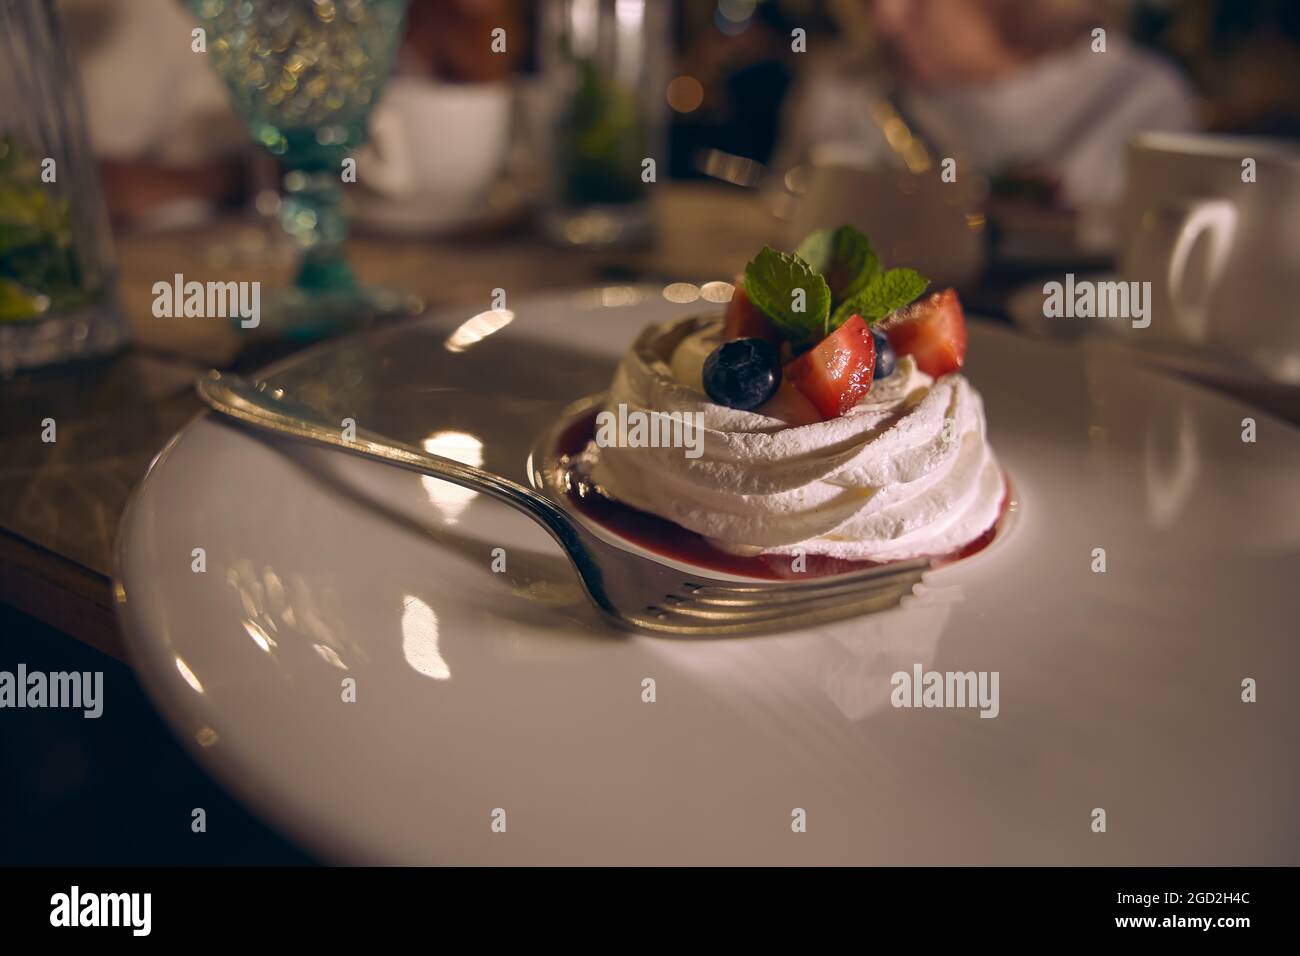 Meringa dolce torta Pavlova con fragole fresche, mirtilli e foglie di menta su un piatto di ceramica bianca. Foto Stock